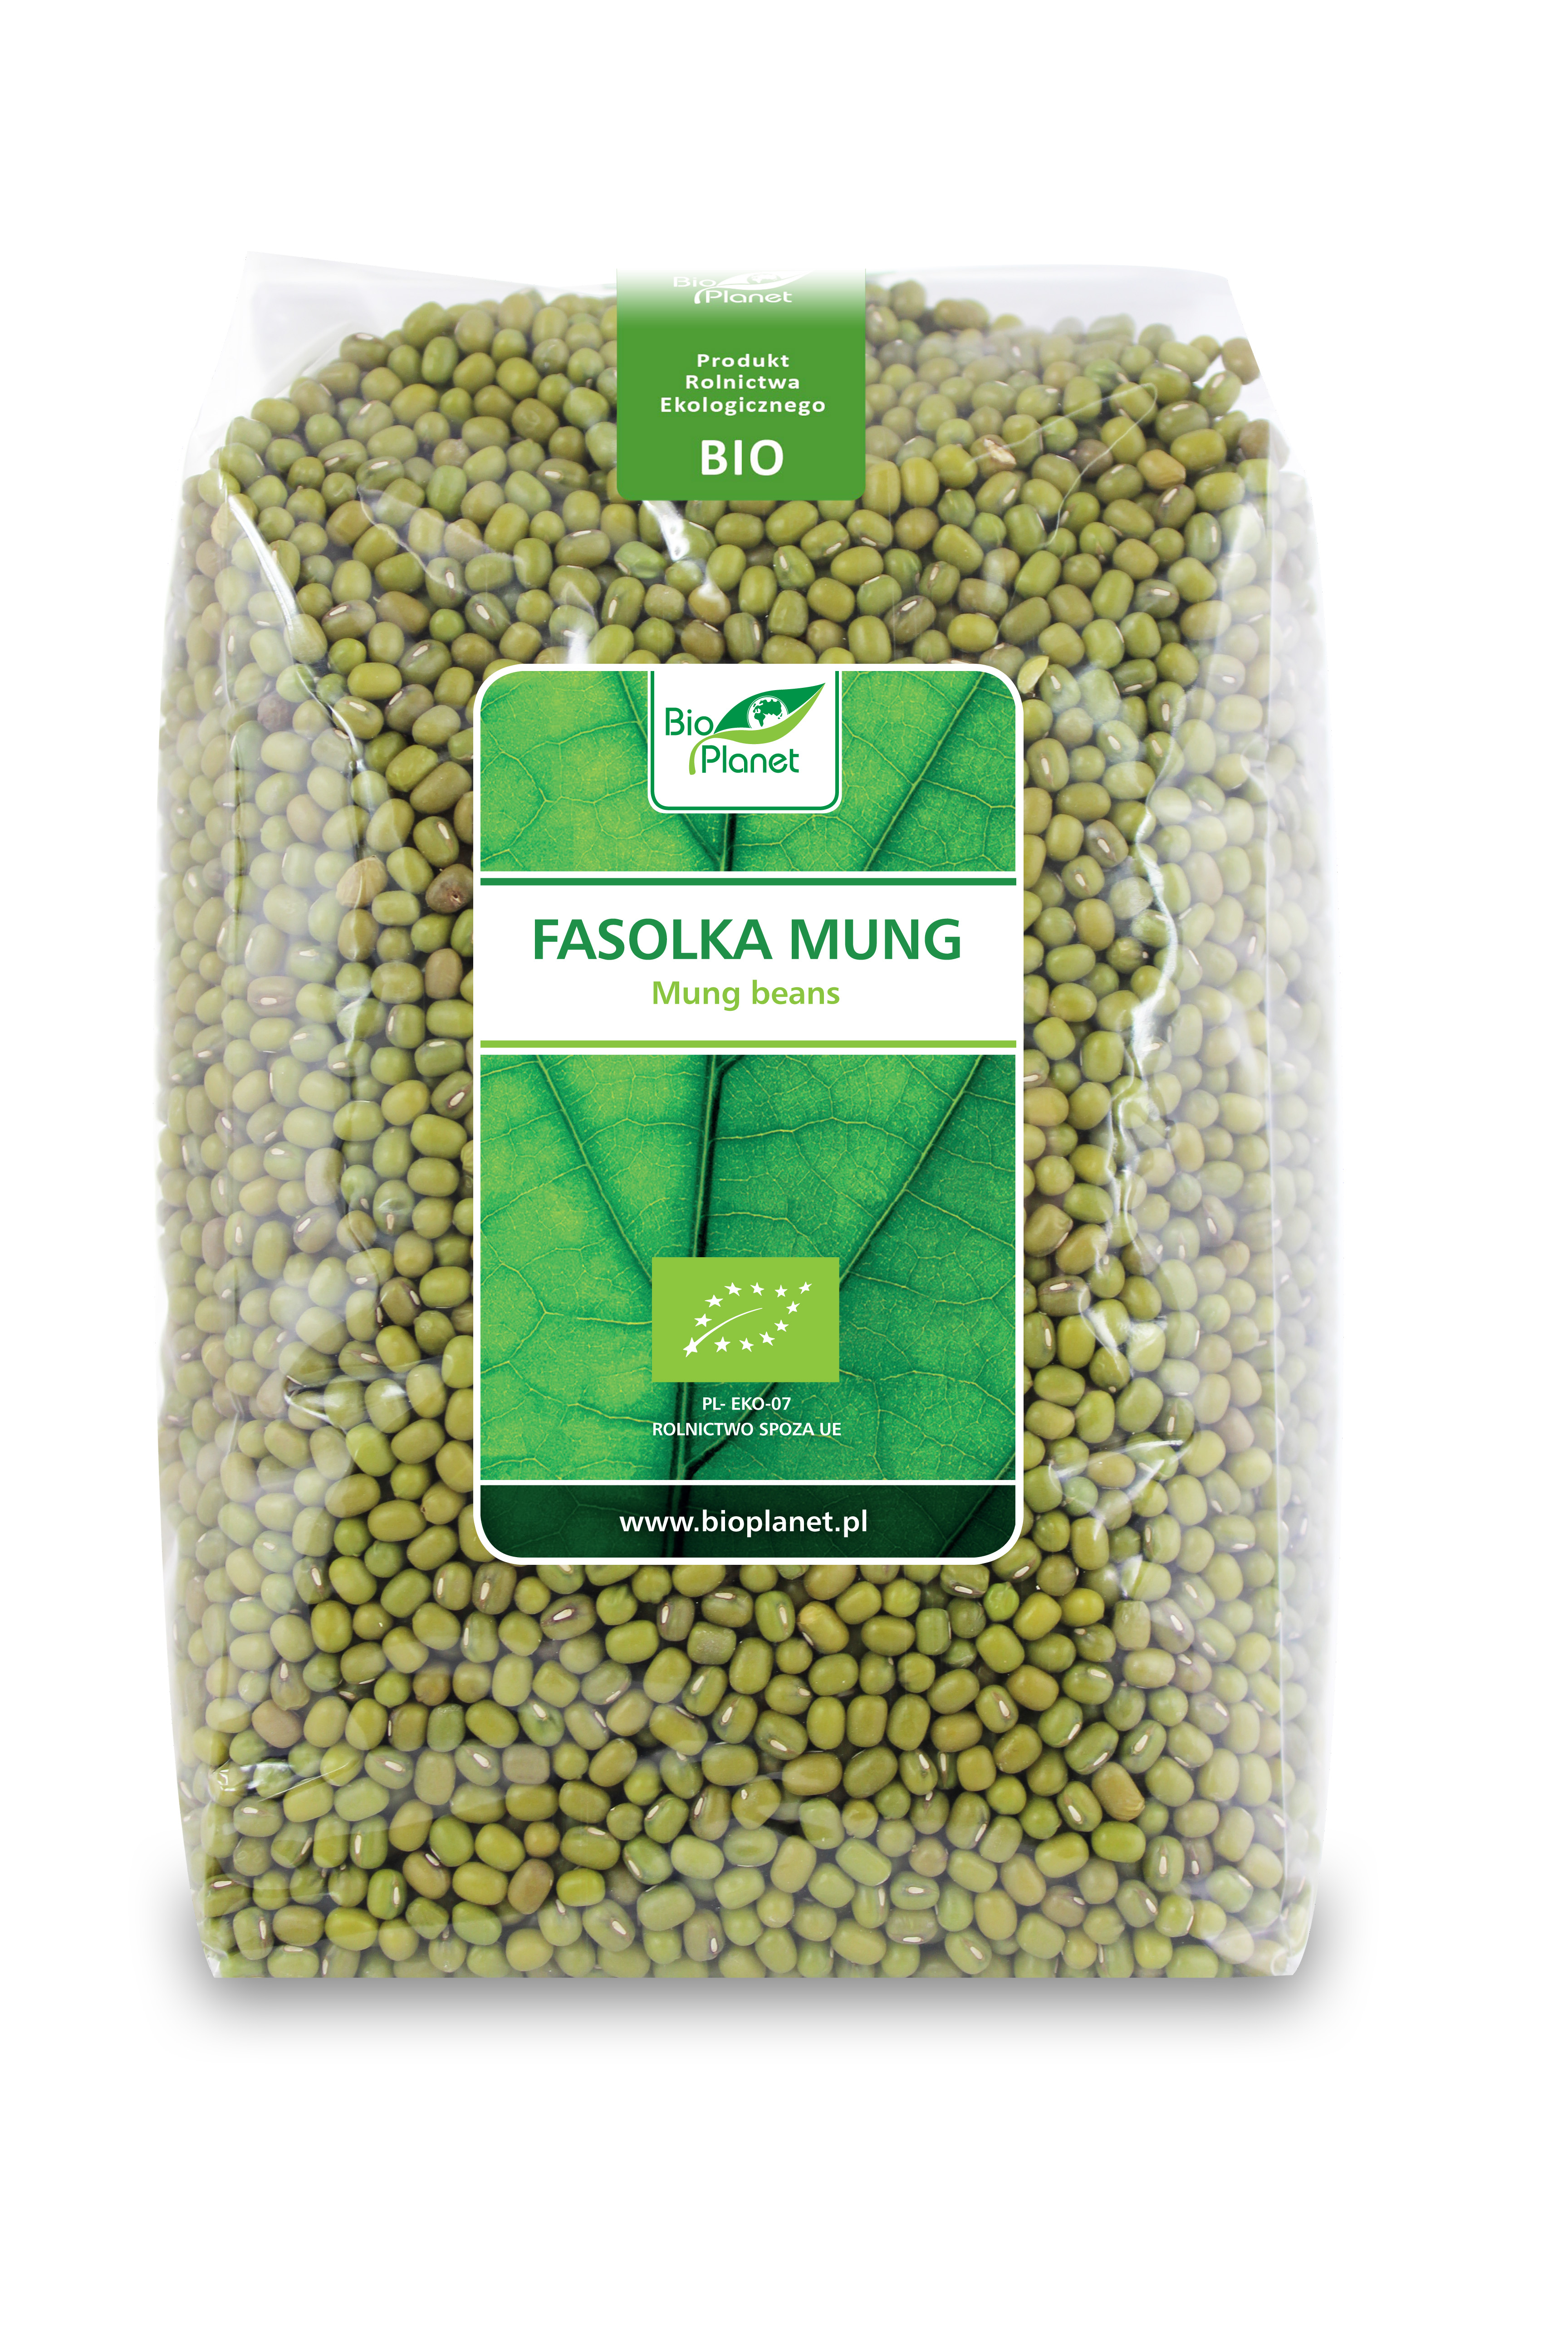 Fasolka Mung BIO 1 kg